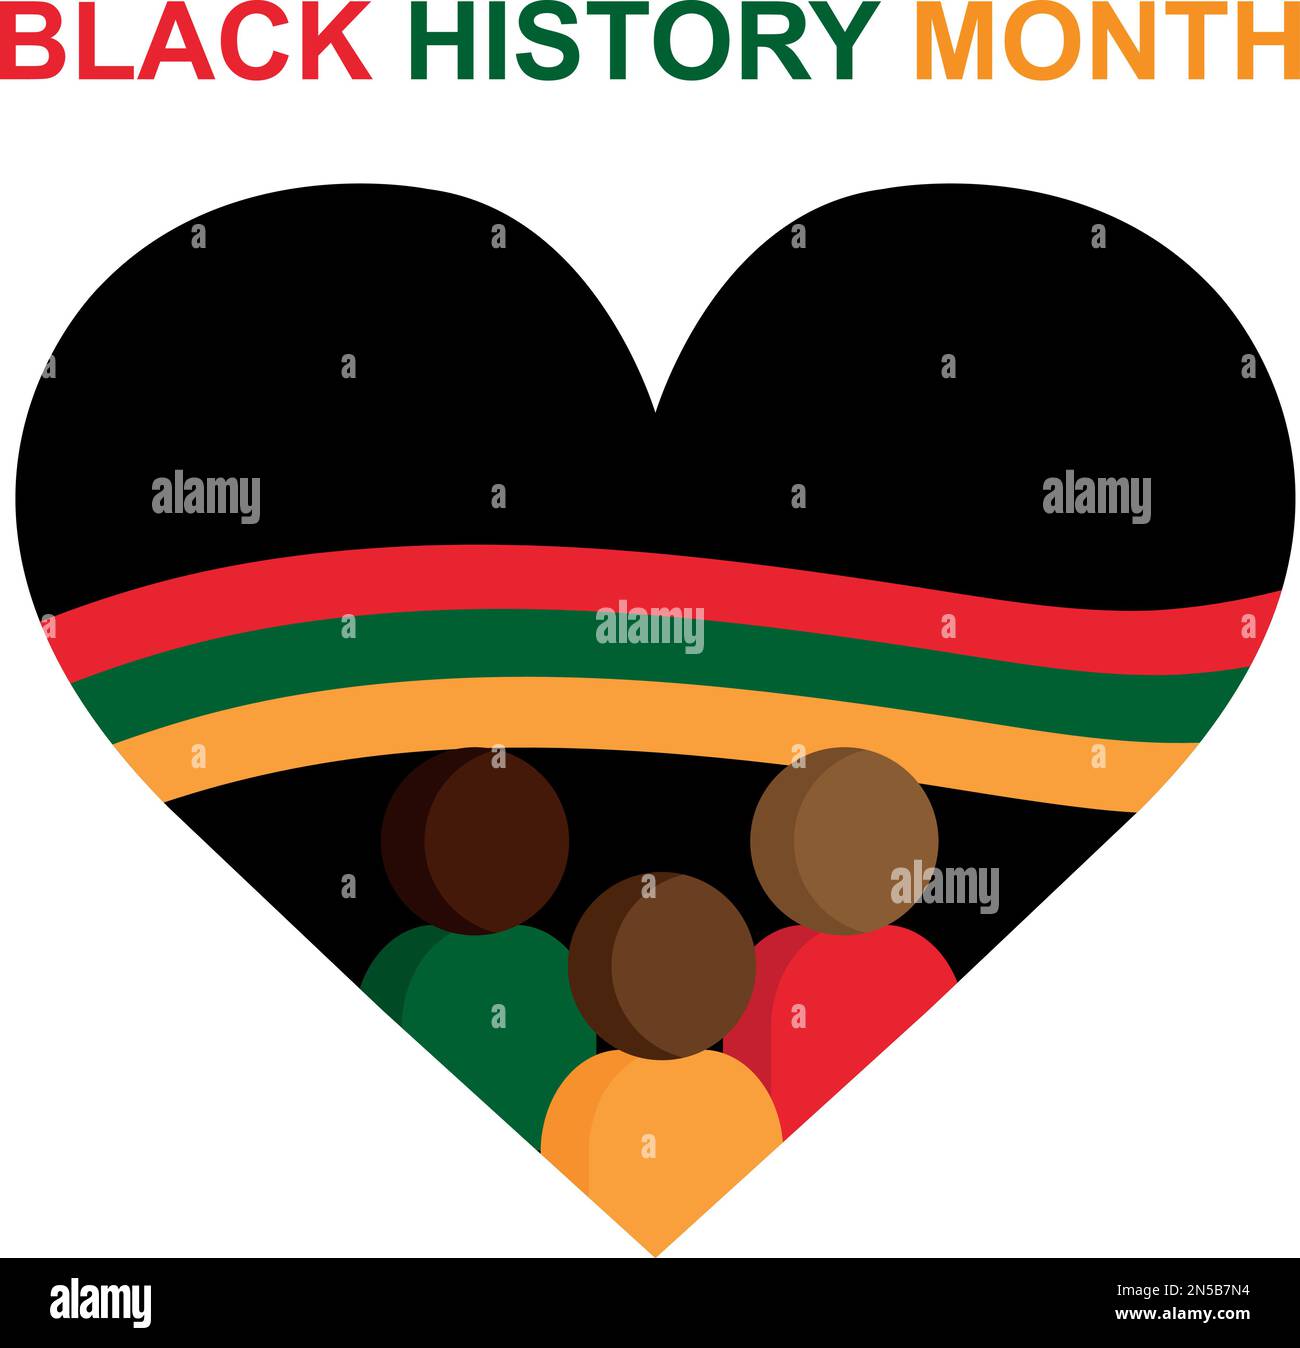 Mois de l'histoire des Noirs. Histoire afro-américaine. Coeur noir avec drapeau vert, jaune et rouge. Icônes de personnes. Célébré chaque année. Illustration de Vecteur